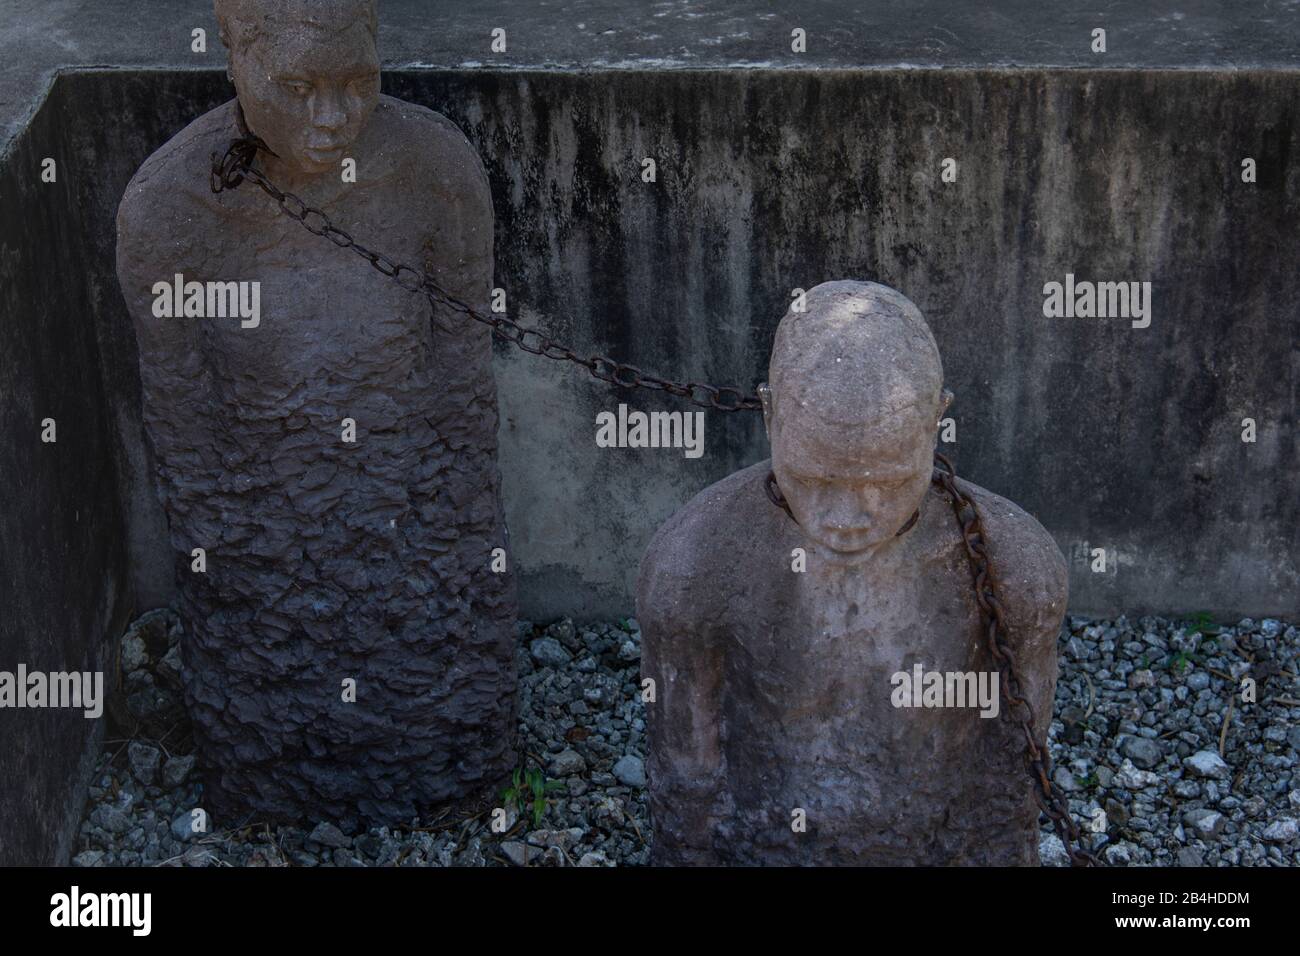 Destination Tansania, Insel Sansibar: Impressionen aus Stone Town, dem ältesten Teil der Stadt Sansibar. Statuen von Sklaven in einer Betongrube als Mahnmal gegen den Sklavenhandel. Stockfoto